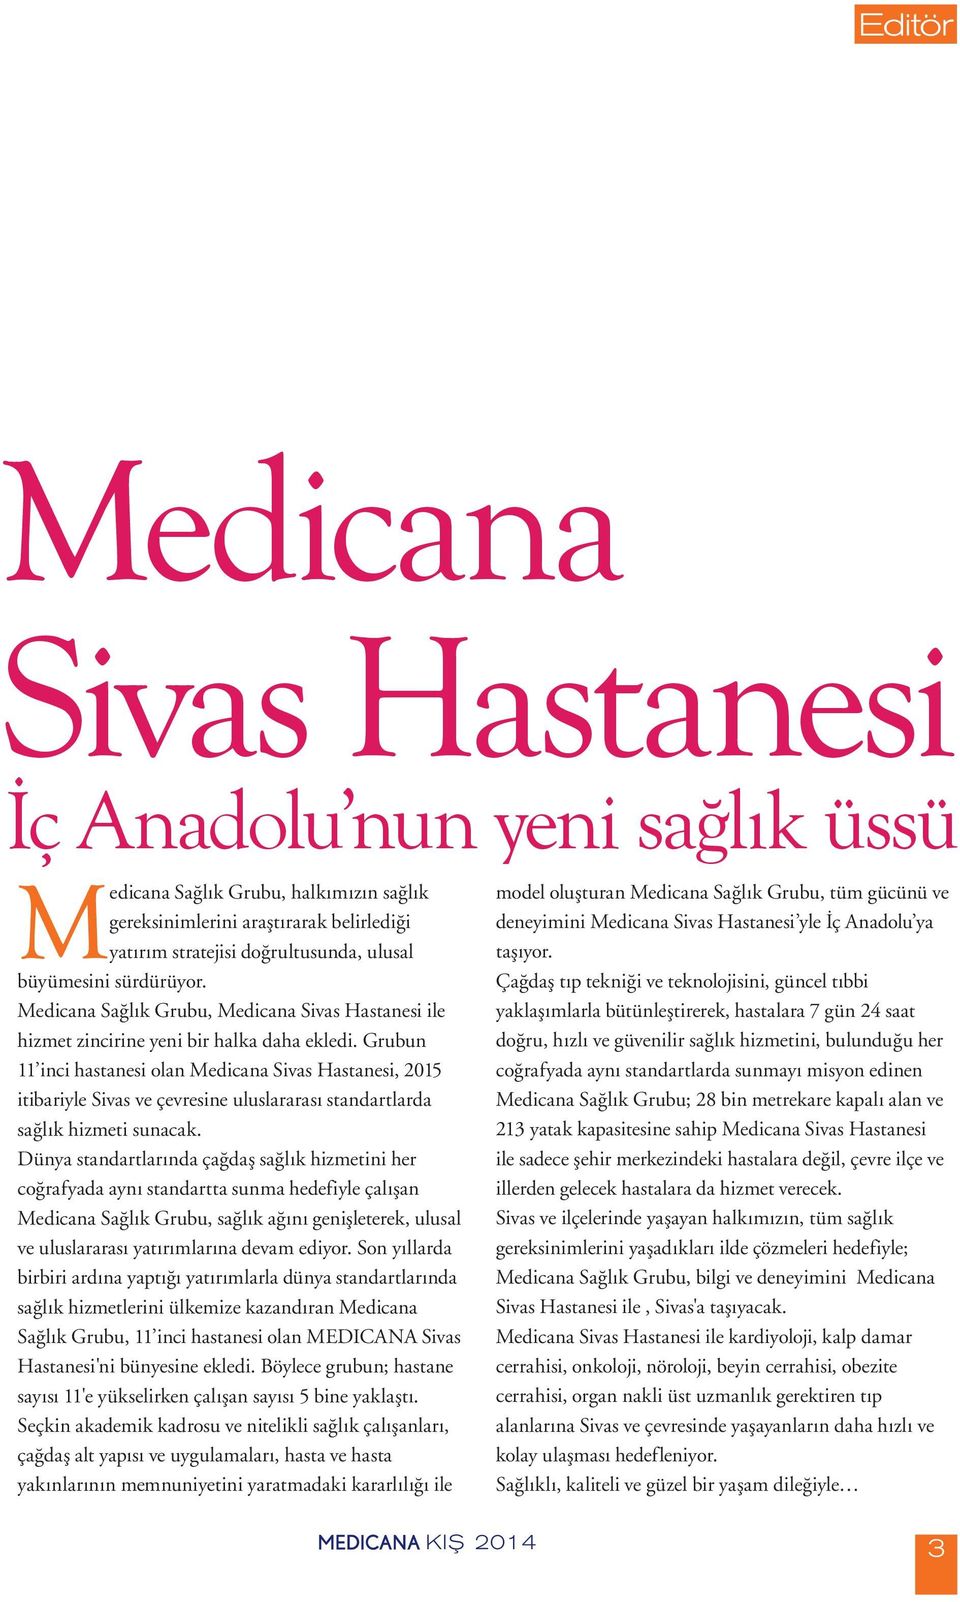 Grubun 11 inci hastanesi olan Medicana Sivas Hastanesi, 2015 itibariyle Sivas ve çevresine uluslararası standartlarda sağlık hizmeti sunacak.